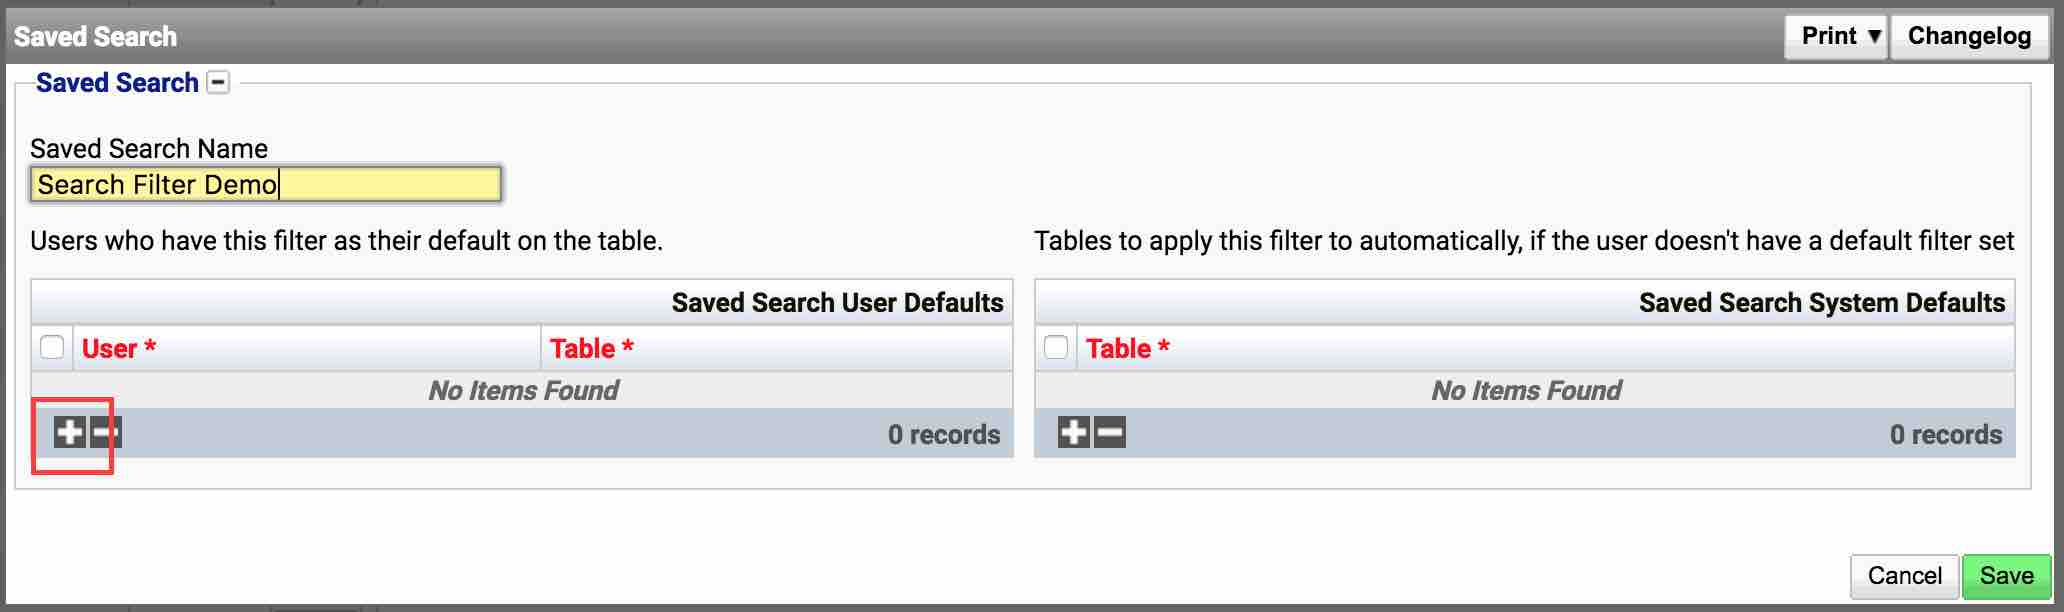 Search Filter Per User